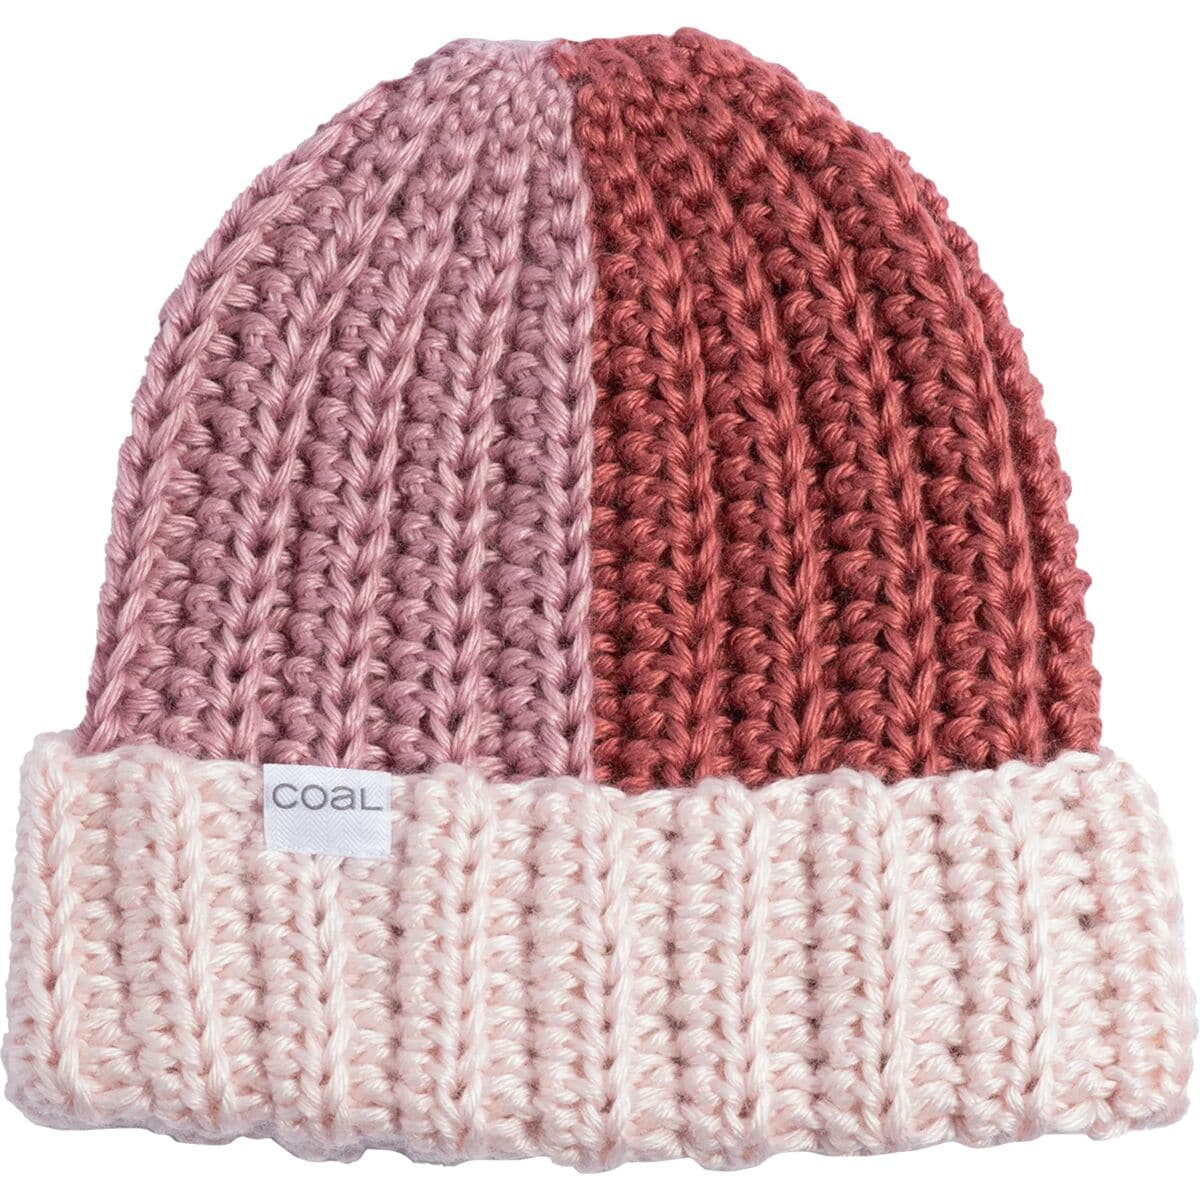 аналоговая шляпа coal headwear цвет fuchsia Наима шапка-бини Coal Headwear, цвет dusty rose